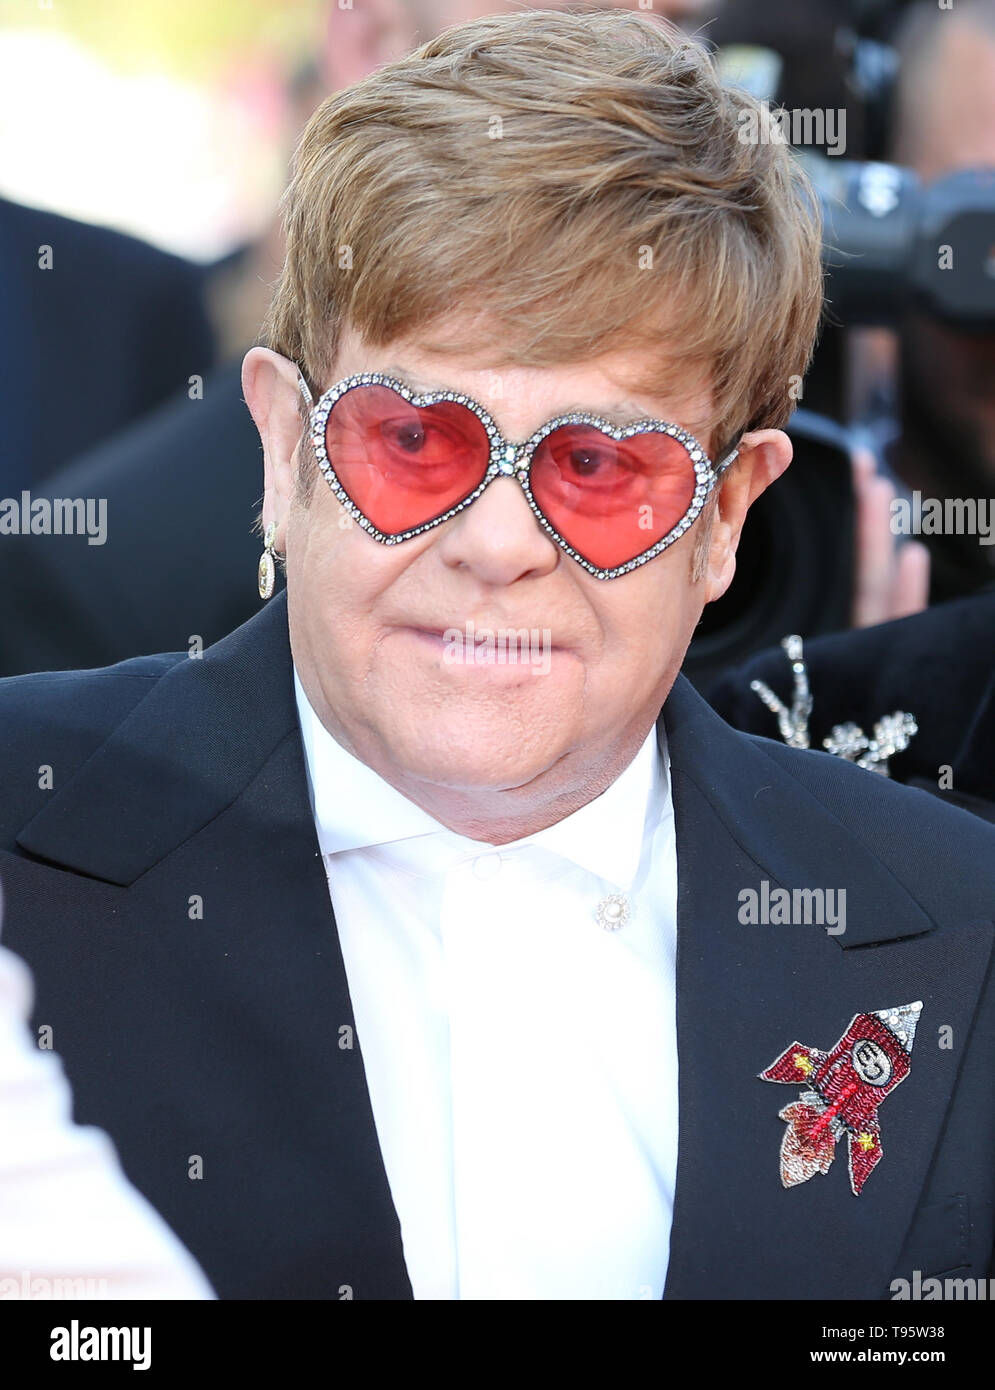 CANNES, Francia - 16 Maggio: Sir Elton John assiste lo screening di "Rocket Man' durante la 72a Cannes Film Festival (credito: Mickael Chavet/Progetto Alba/Alamy Live News) Foto Stock